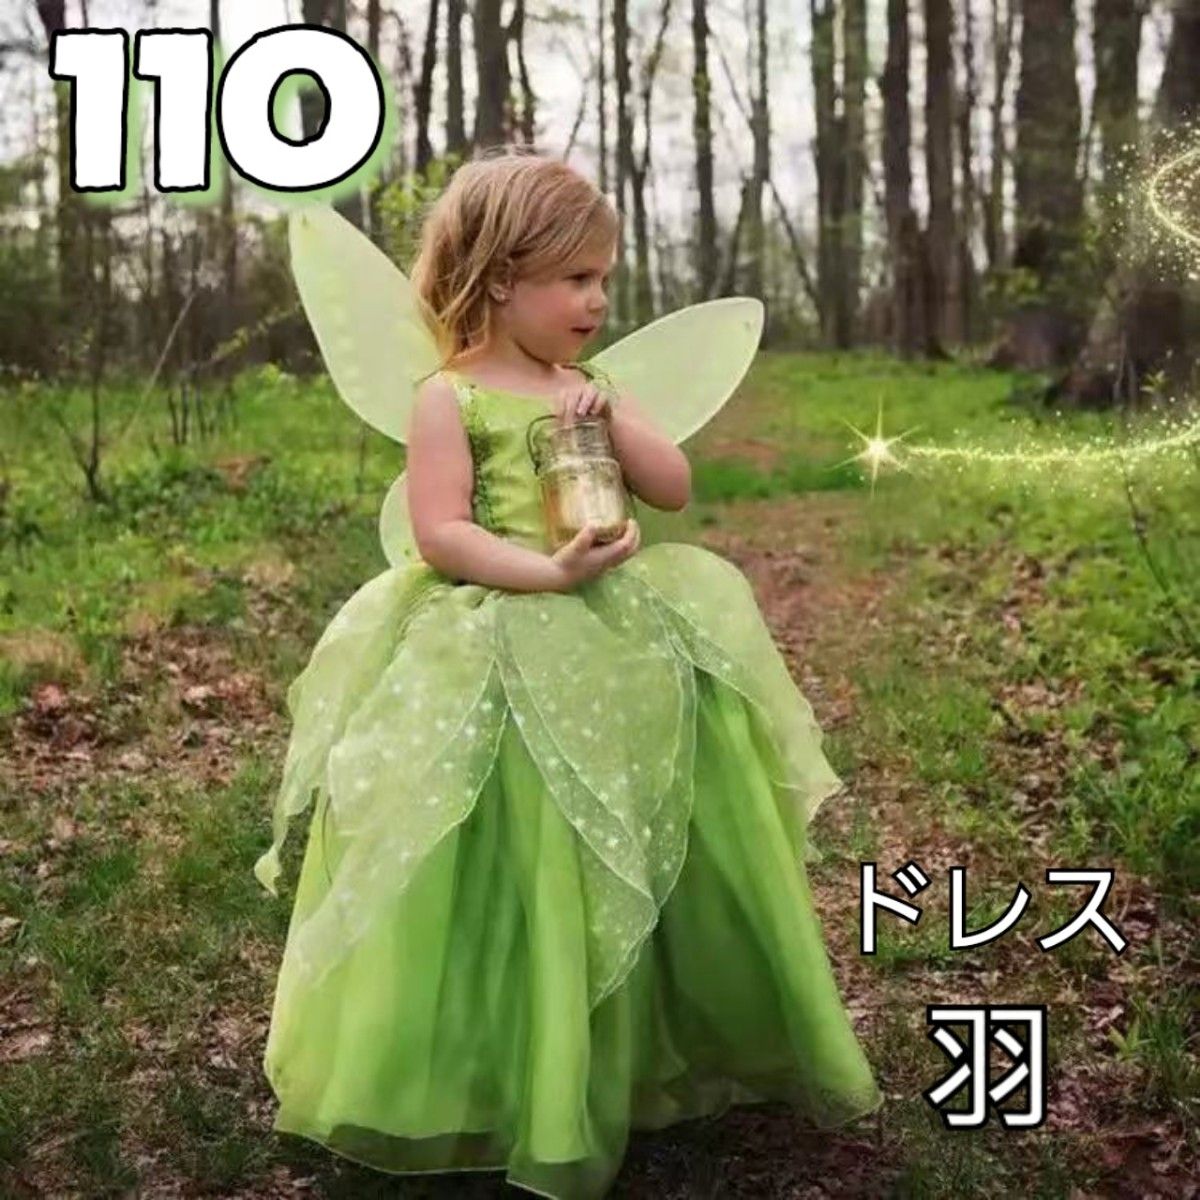 妖精 羽根 ティンカーベル ドレス 110 コスプレ ハロウィン プリンセス